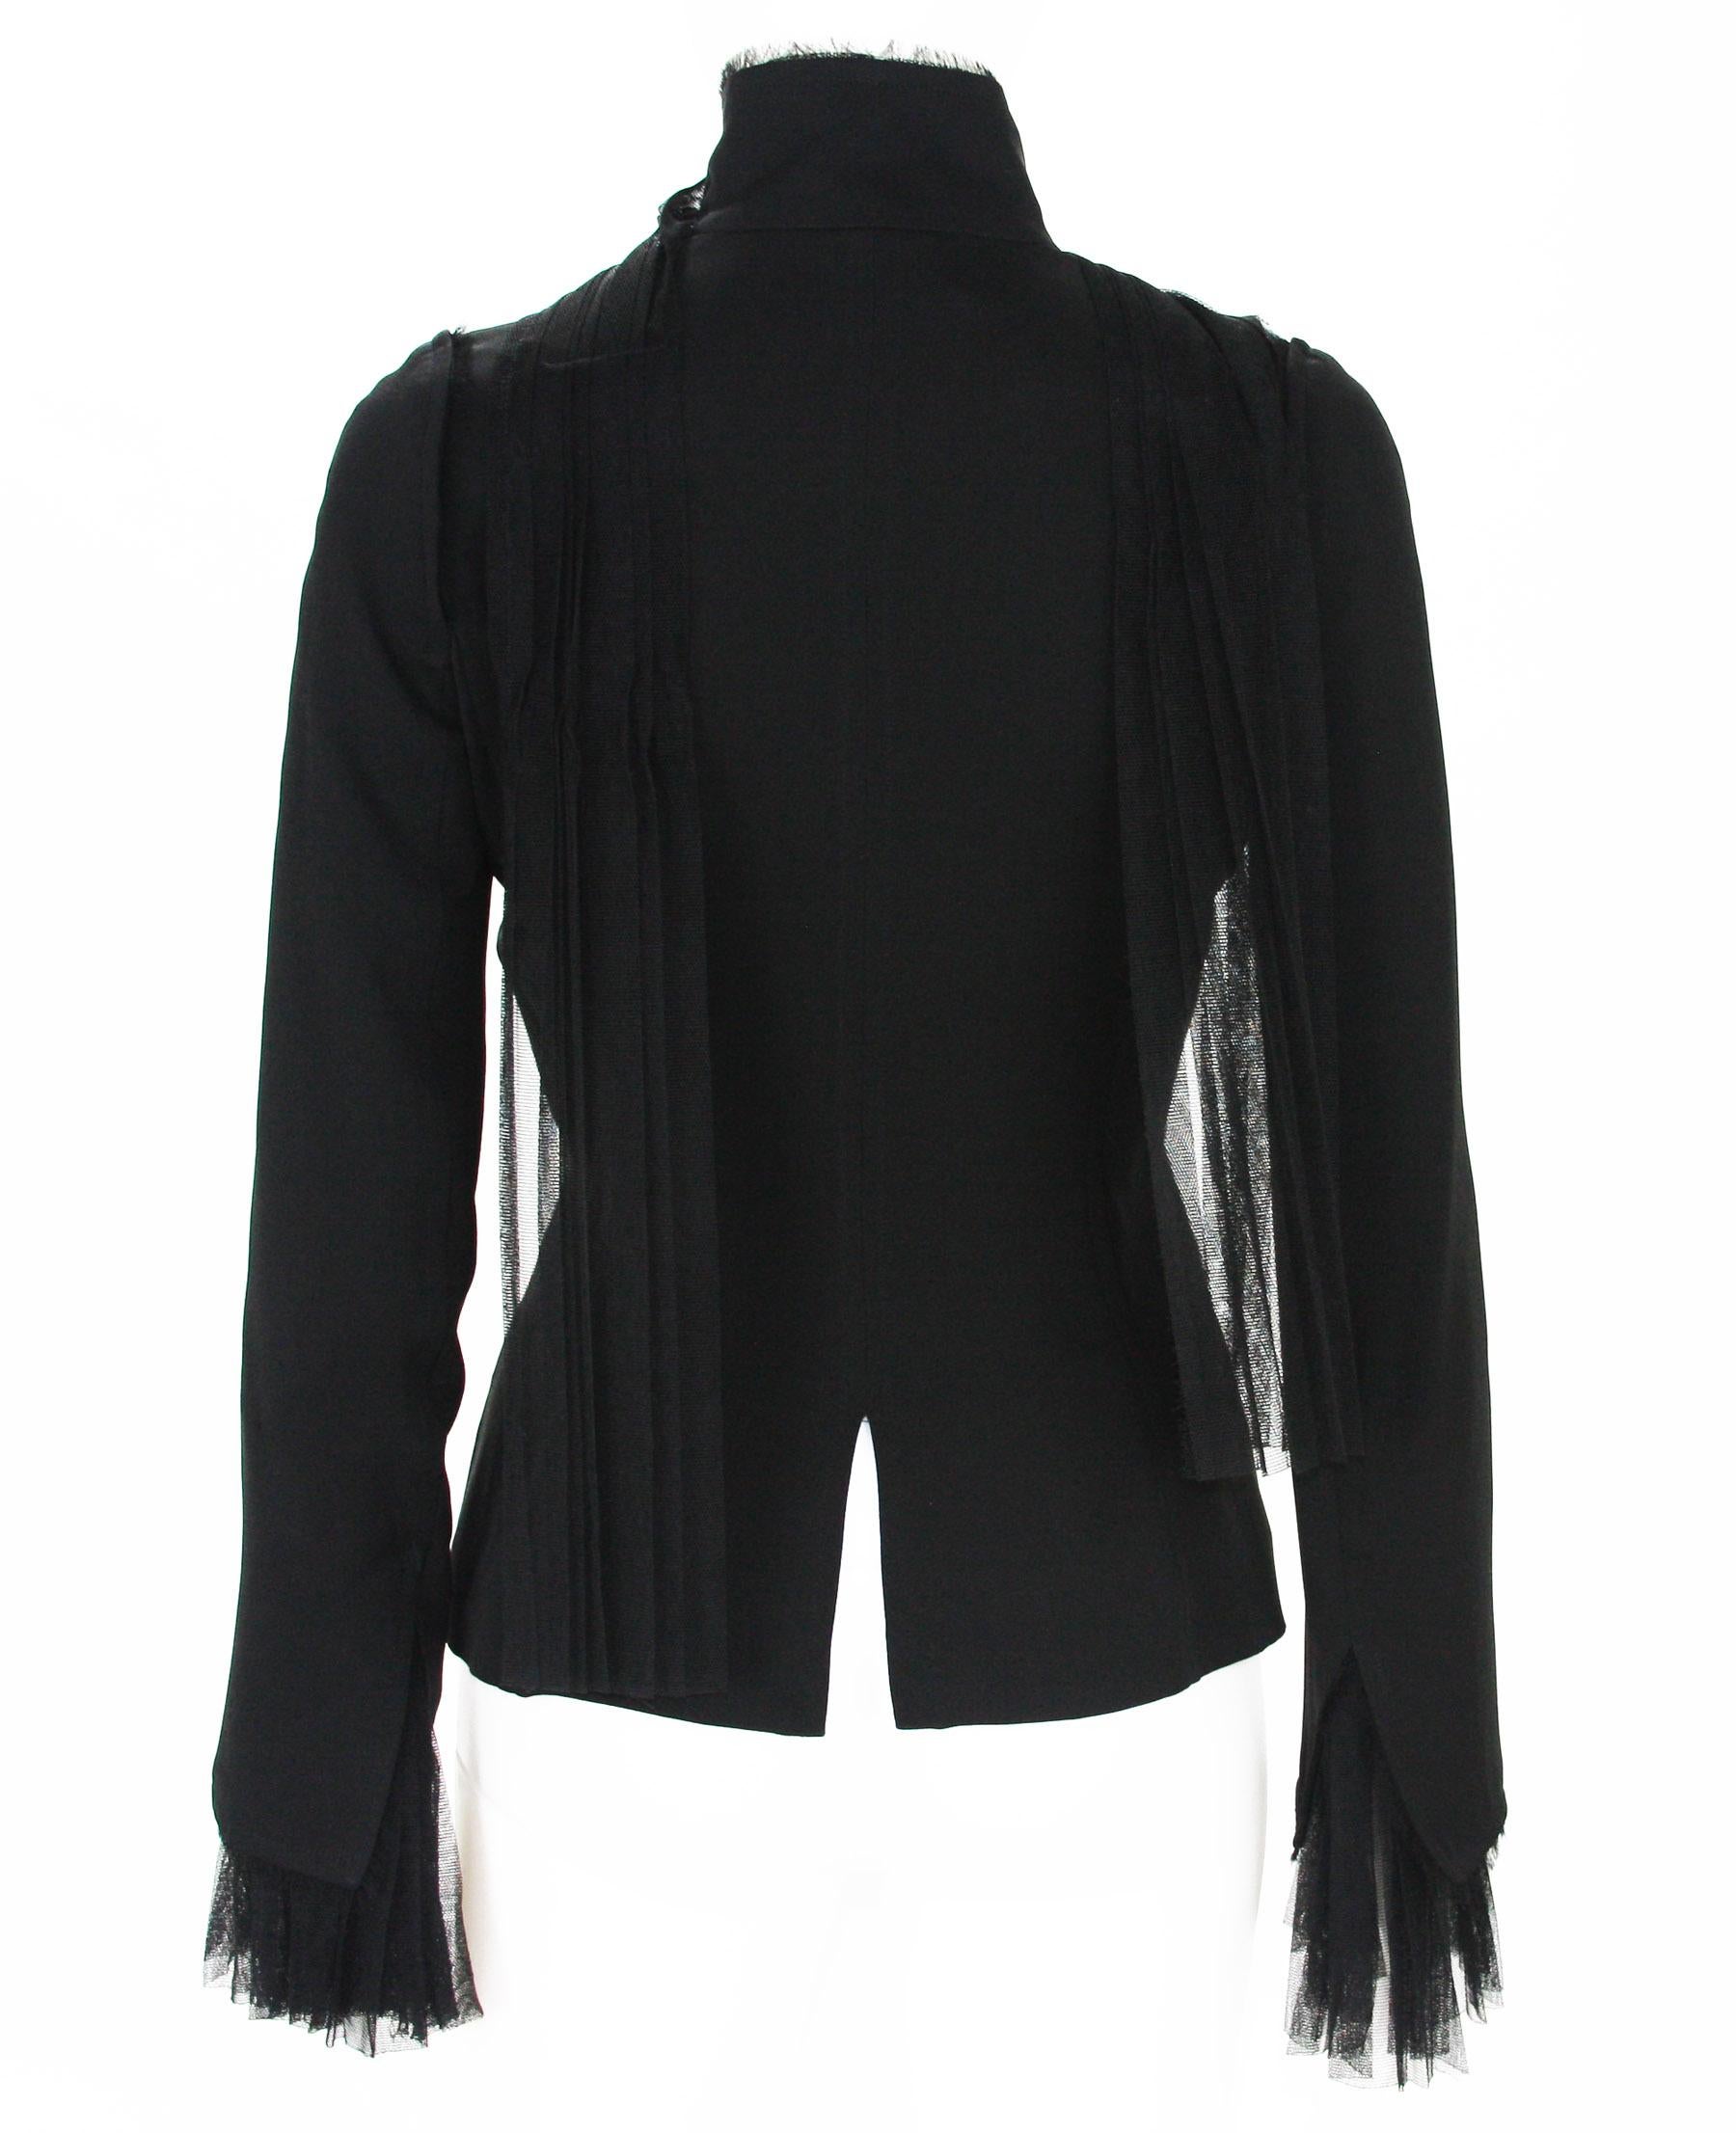 Tom Ford for Yves Saint Laurent F/W 2002 Black Silk Tulle Jacket Blazer 36, 38  4